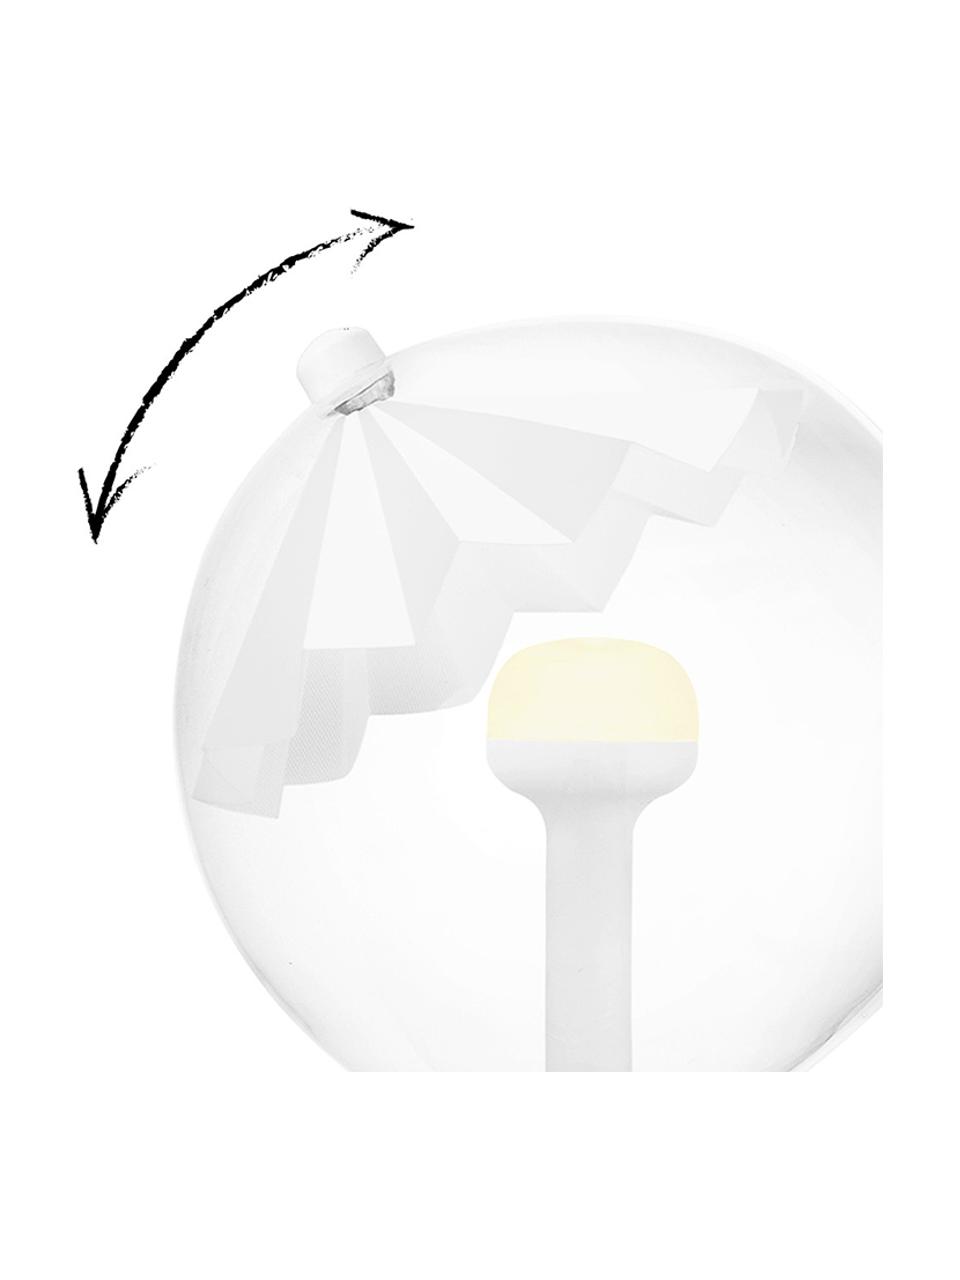 Ampoule (E27 - 400 lm) blanc chaud à intensité variable, 1 pièce, Blanc, transparent, couleur argentée, Ø 12 x haut. 19 cm